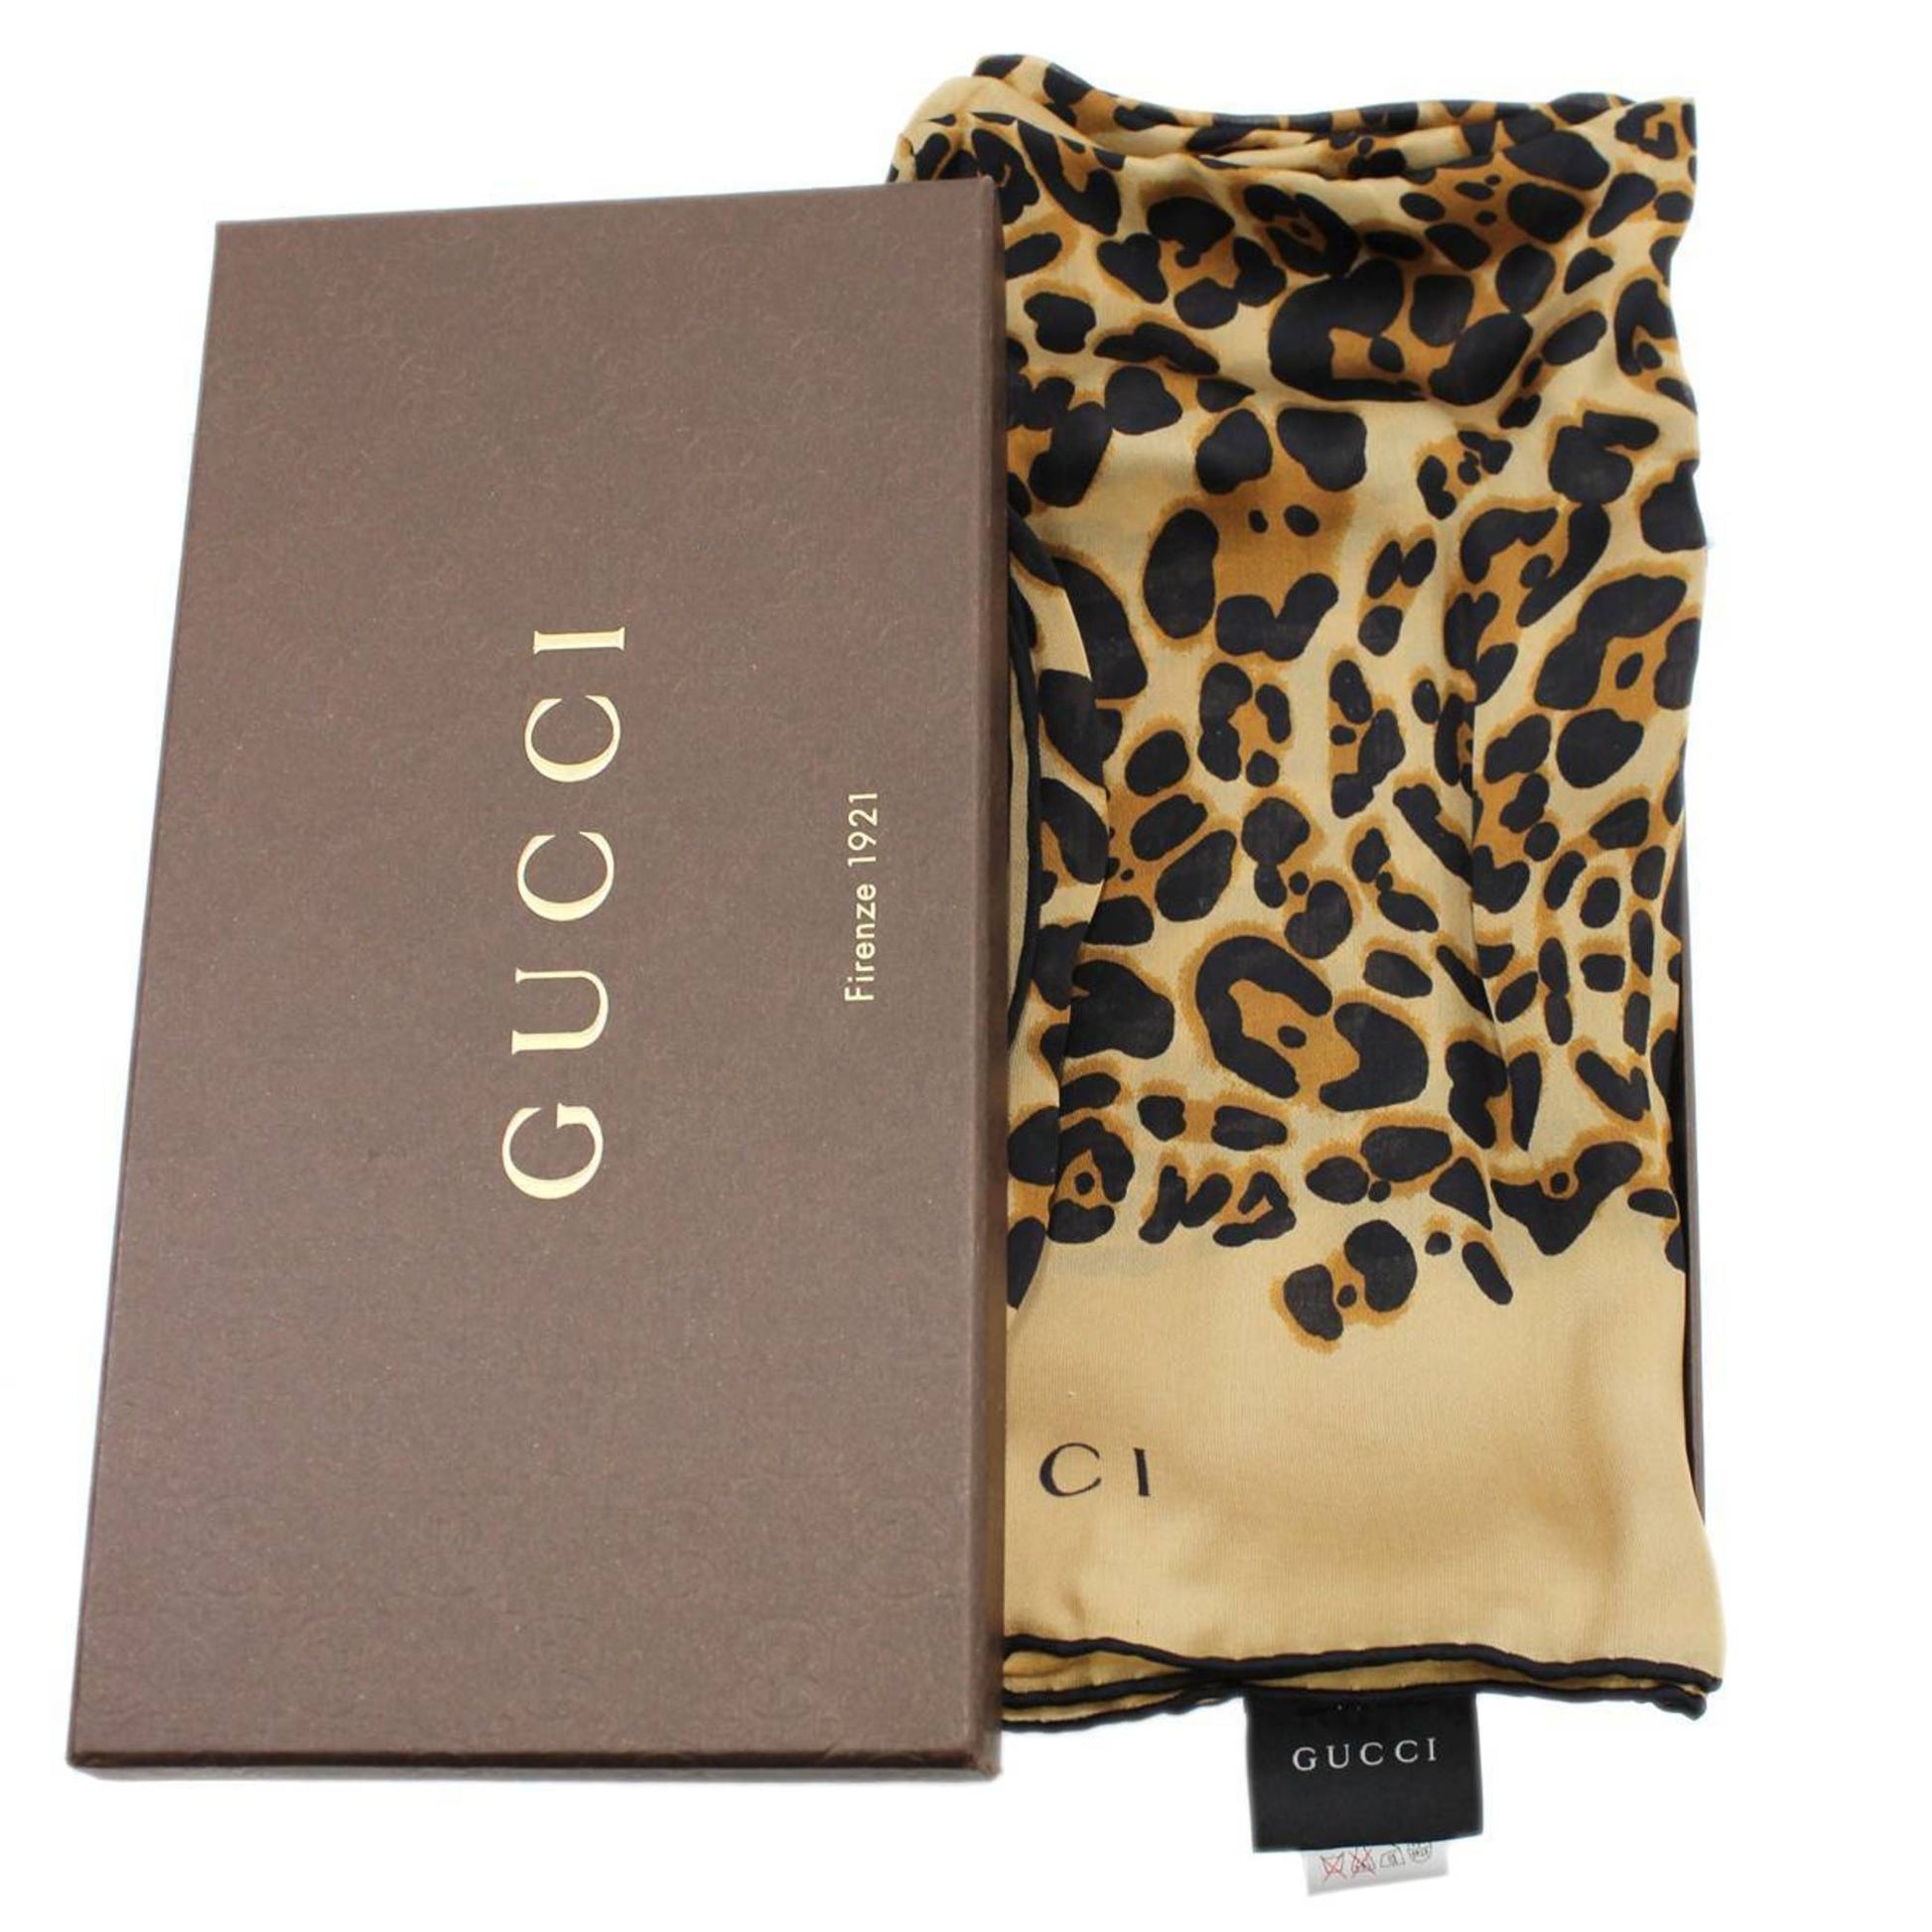 Auth Louis Vuitton Leopard Scarf Brown/Blaclk 100% Silk